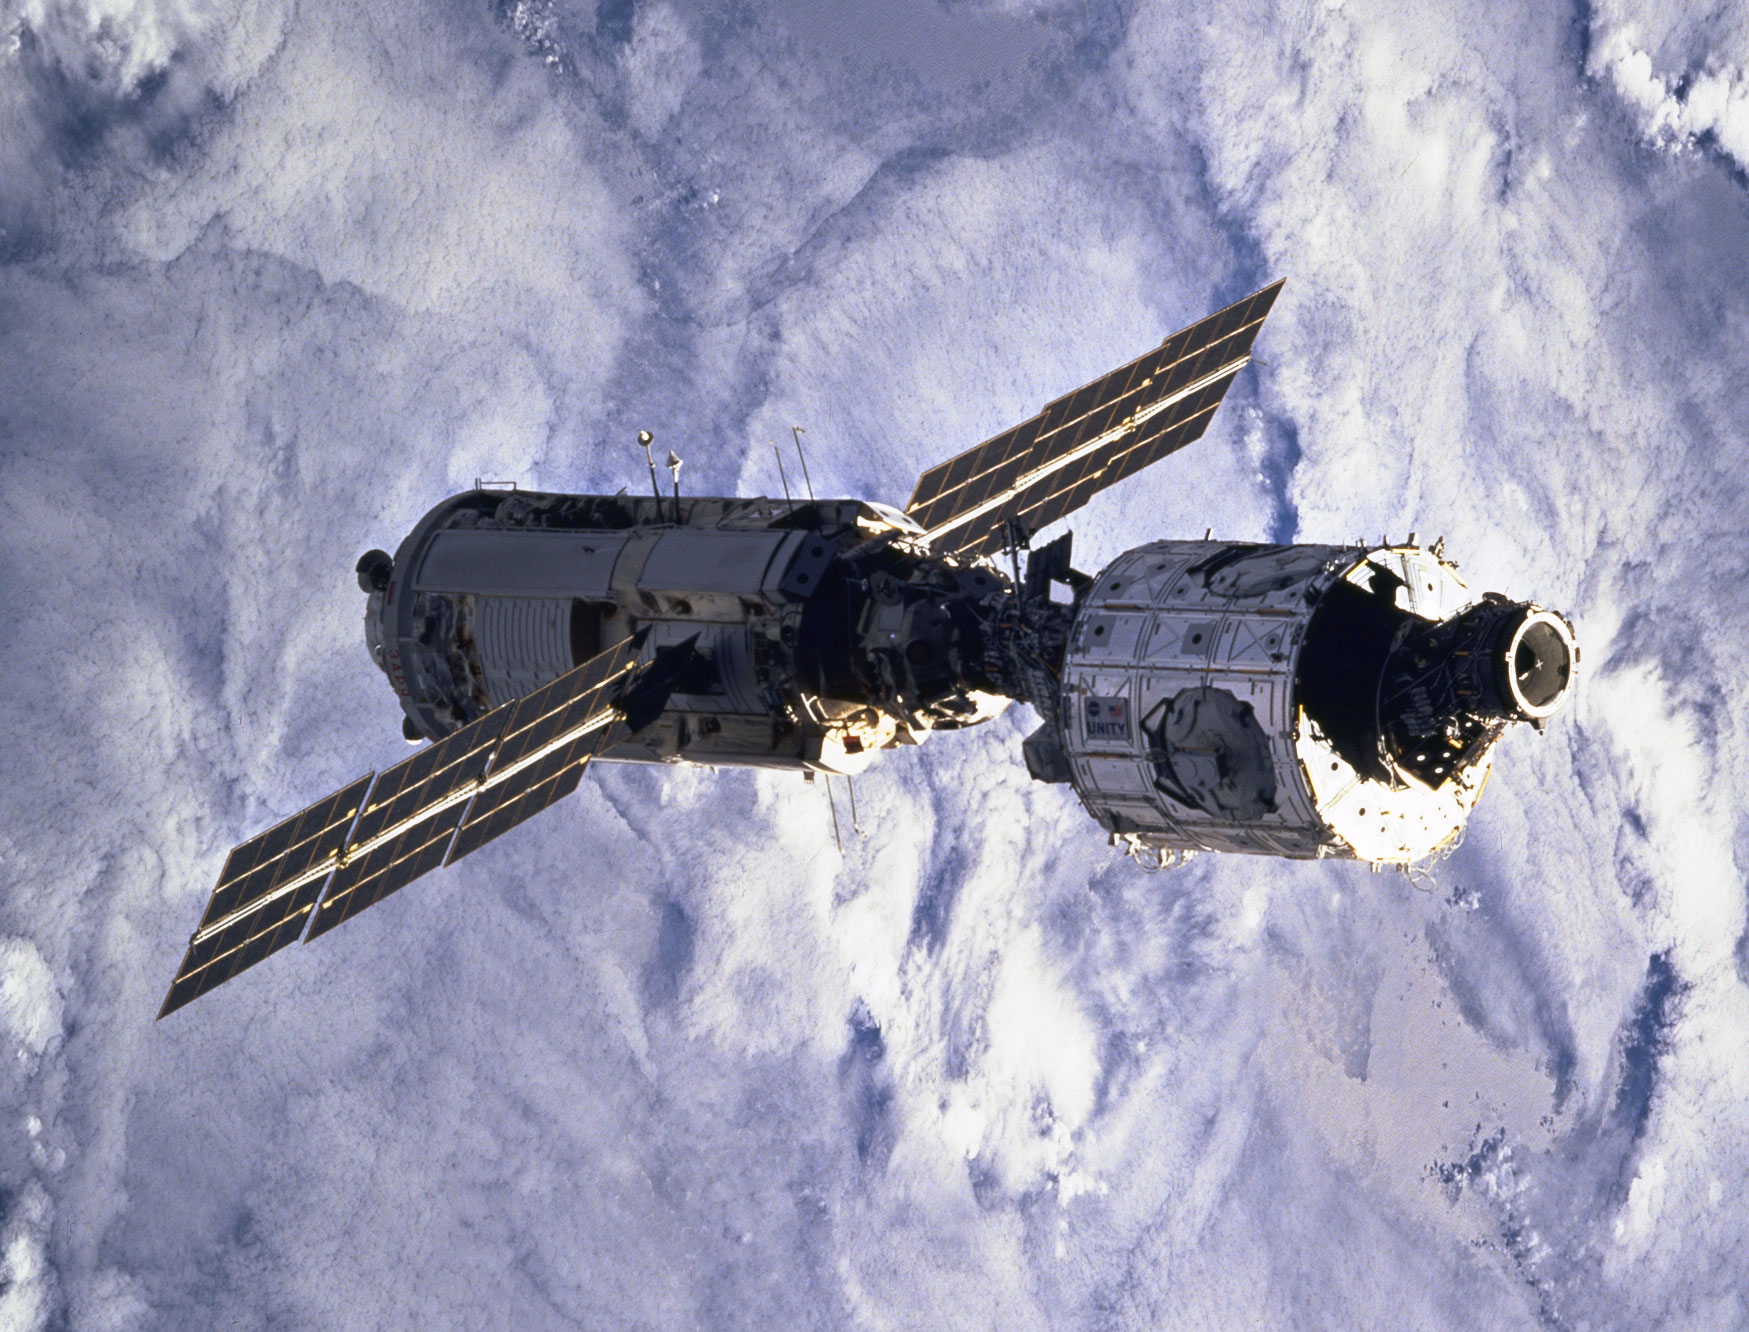 Zárodek ISS: Zarja a Node-l (Unity) konečně na orbitě